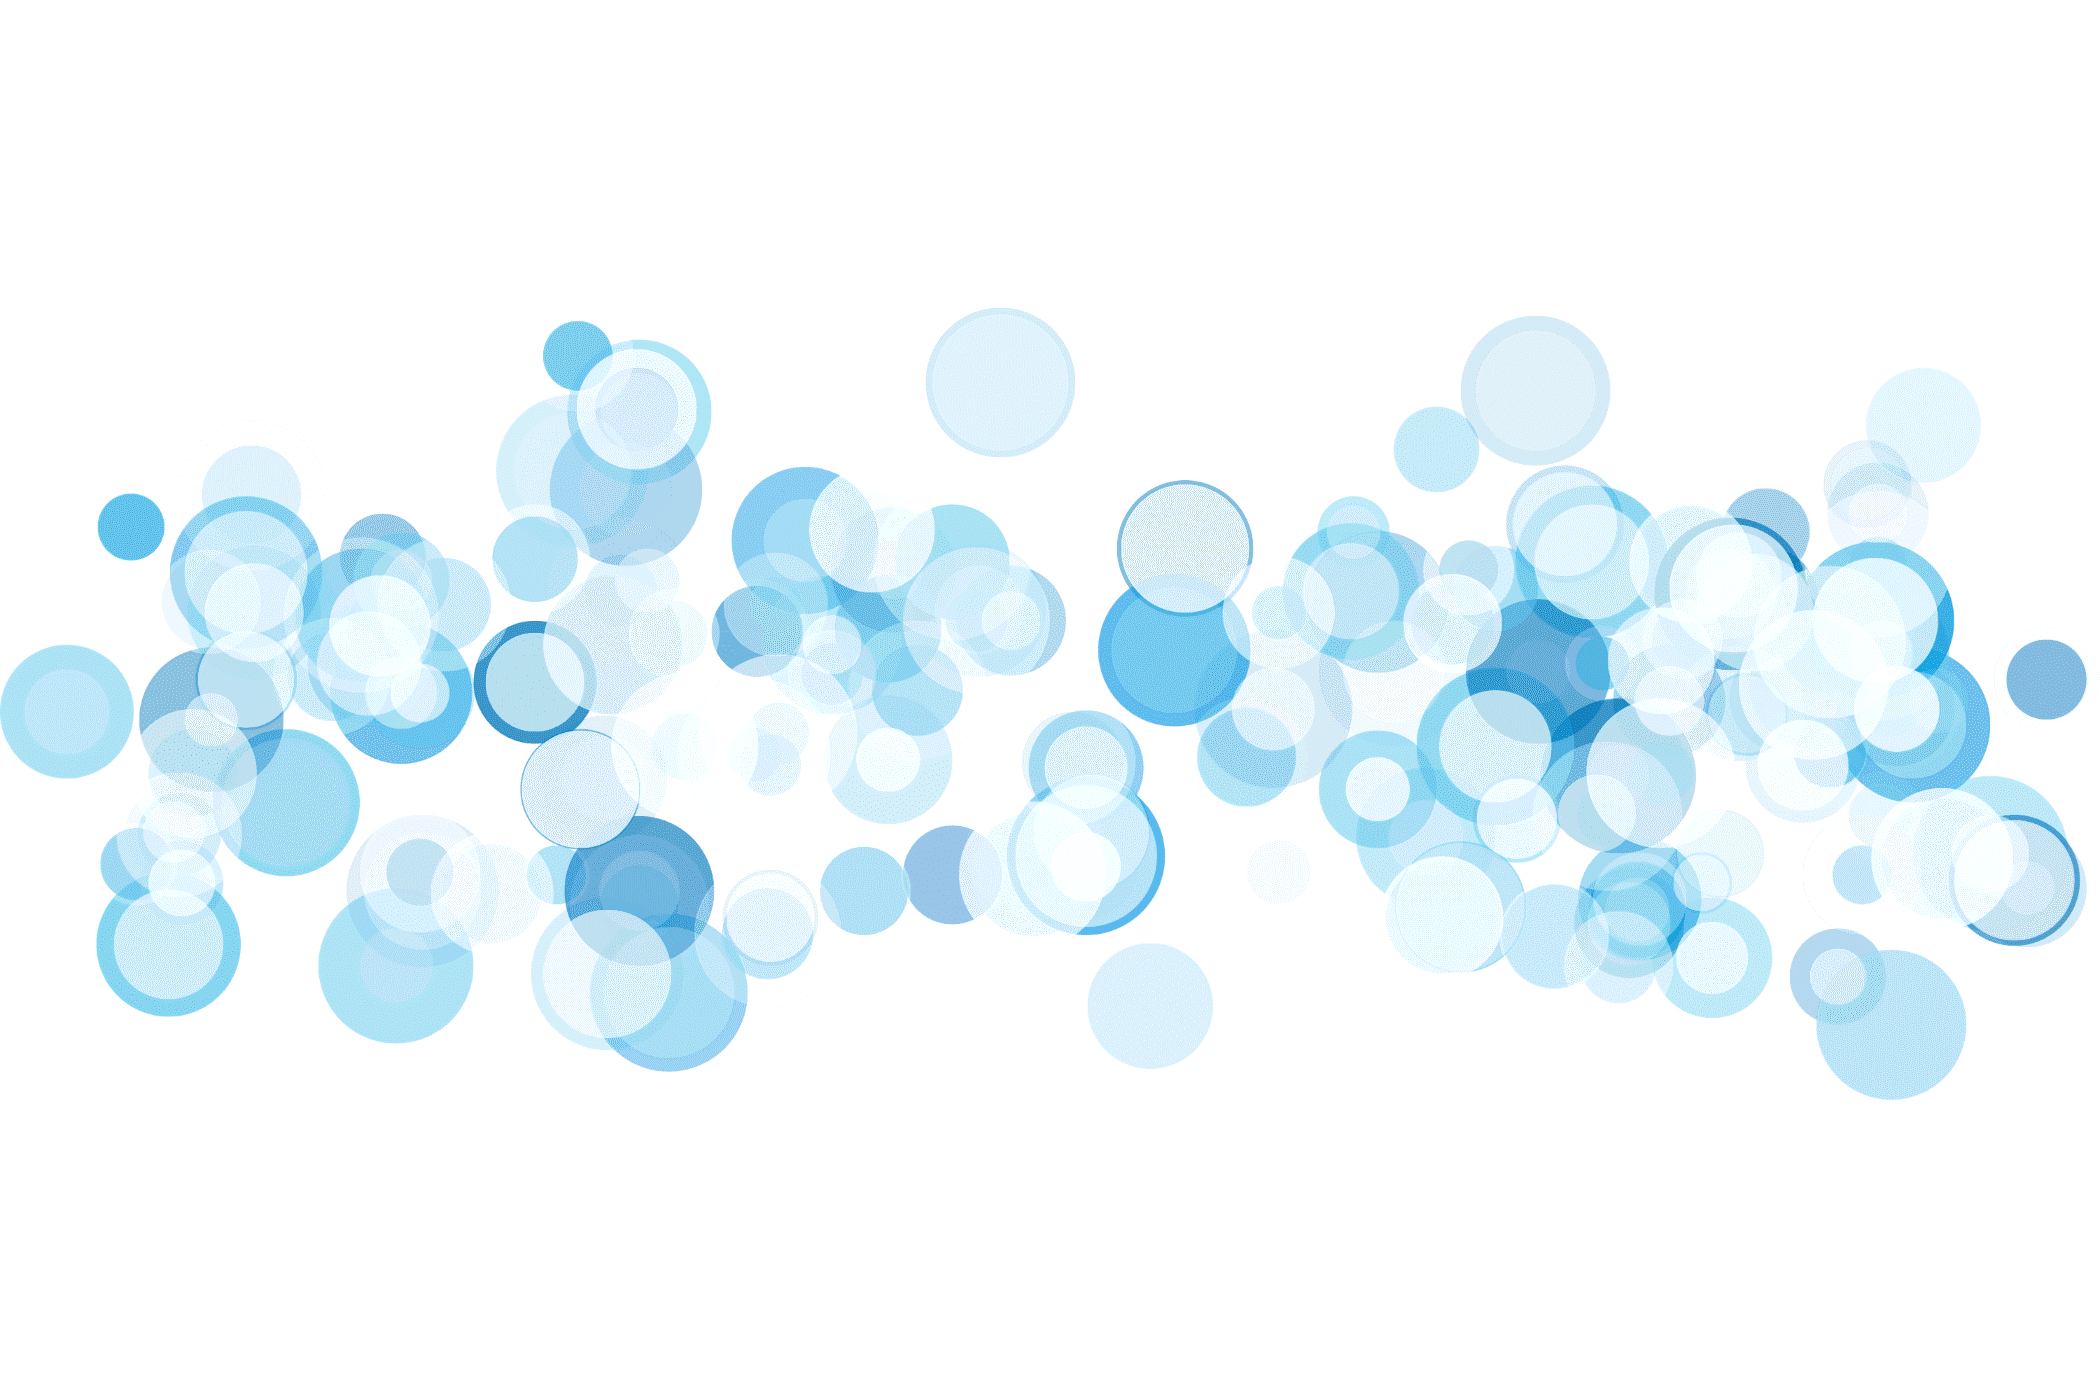 Bubbles illustration